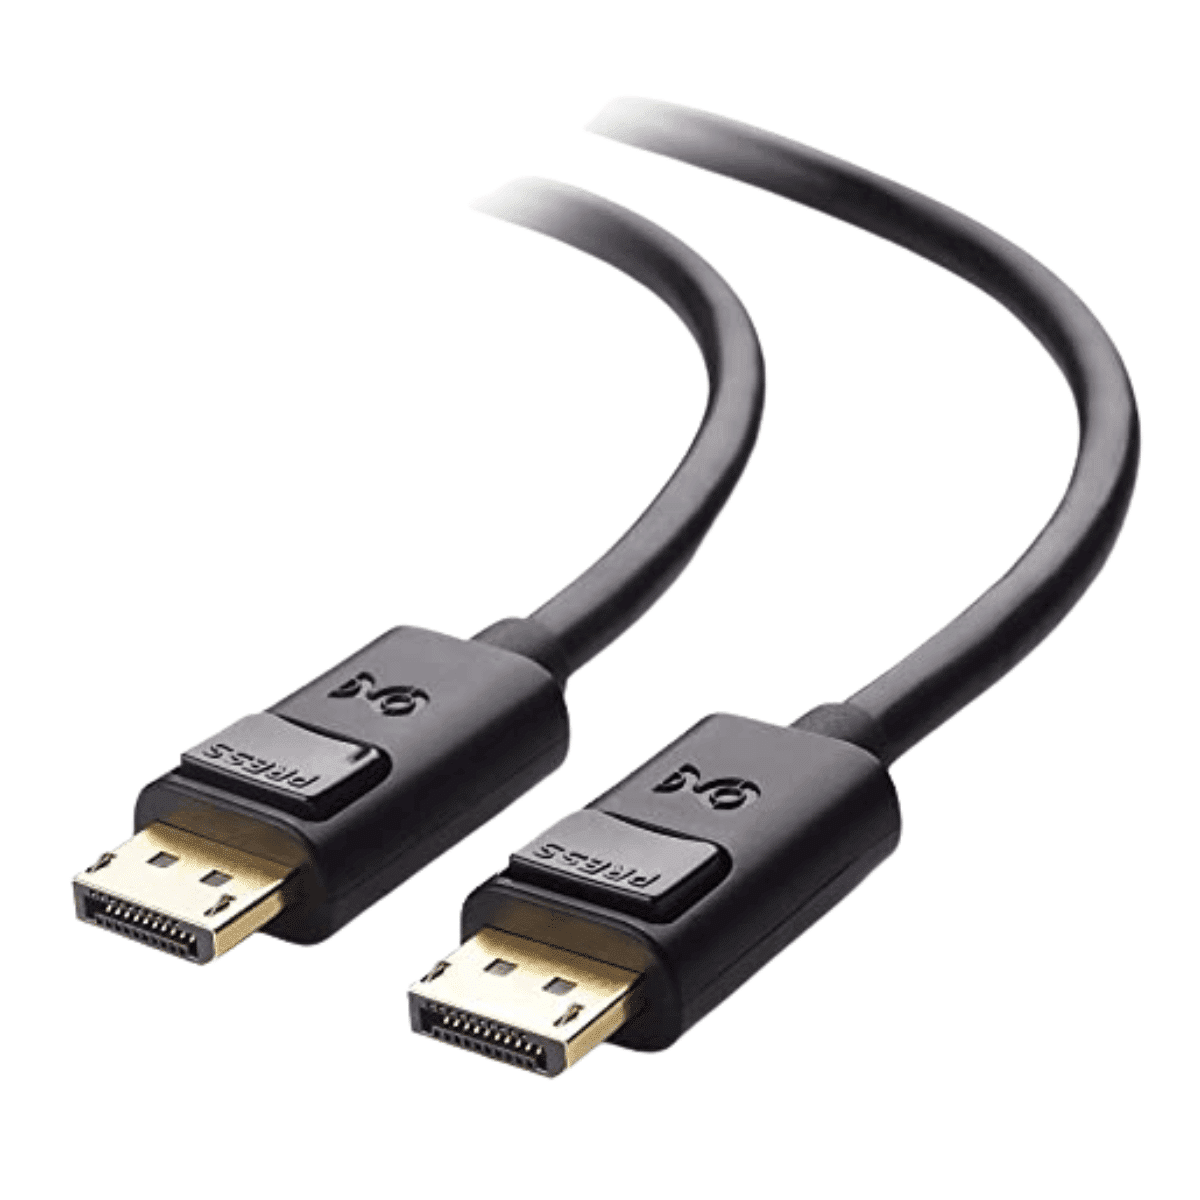 Cable DisplayPort 1.4 de 1.8m Cable Matters, Certificado VESA, 8K 60Hz, UltraHD 4K 120Hz, HBR3, HDR - Lapshop Chile